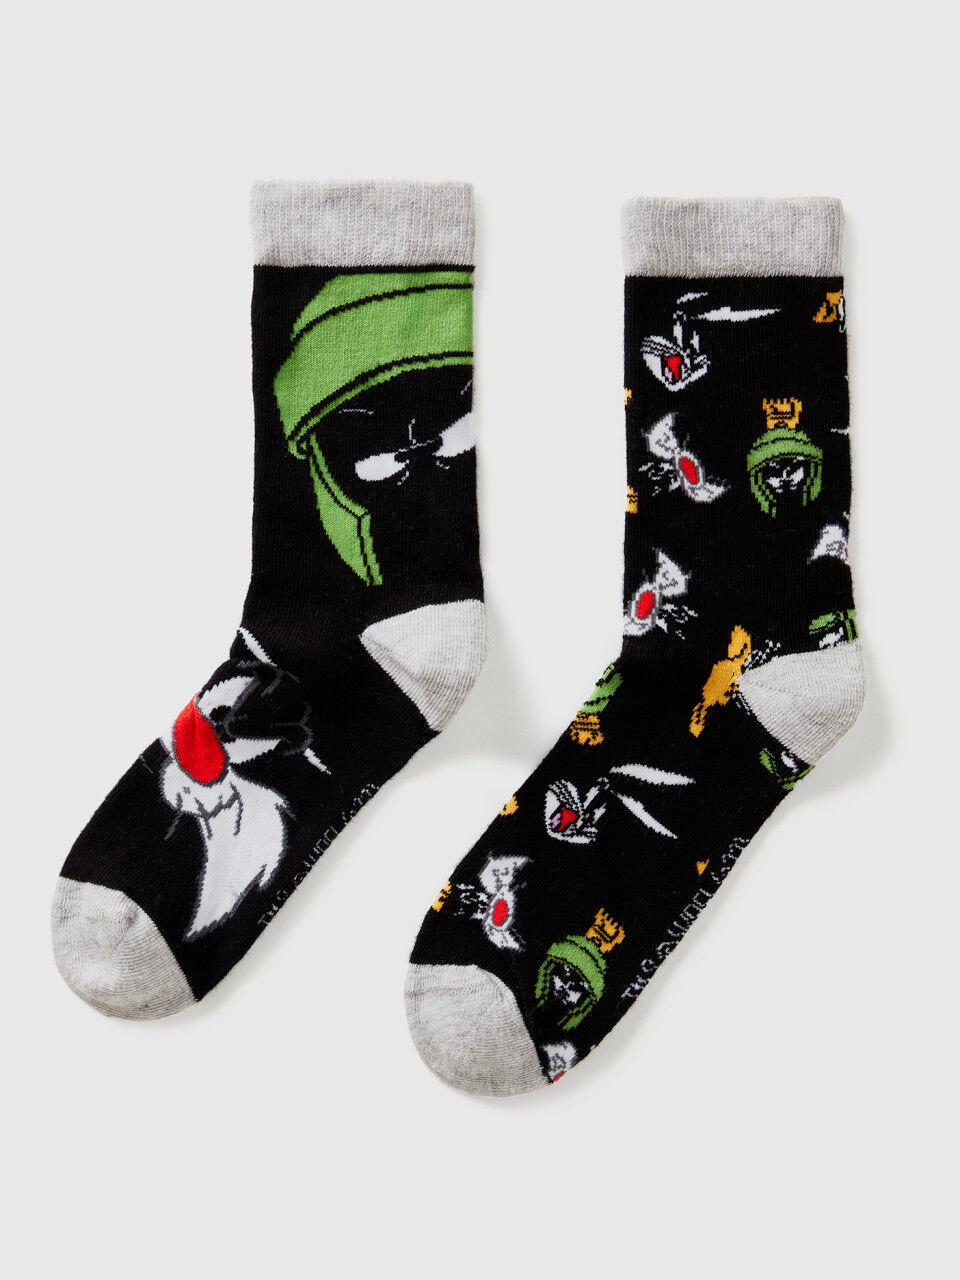 Looney Tunes socks